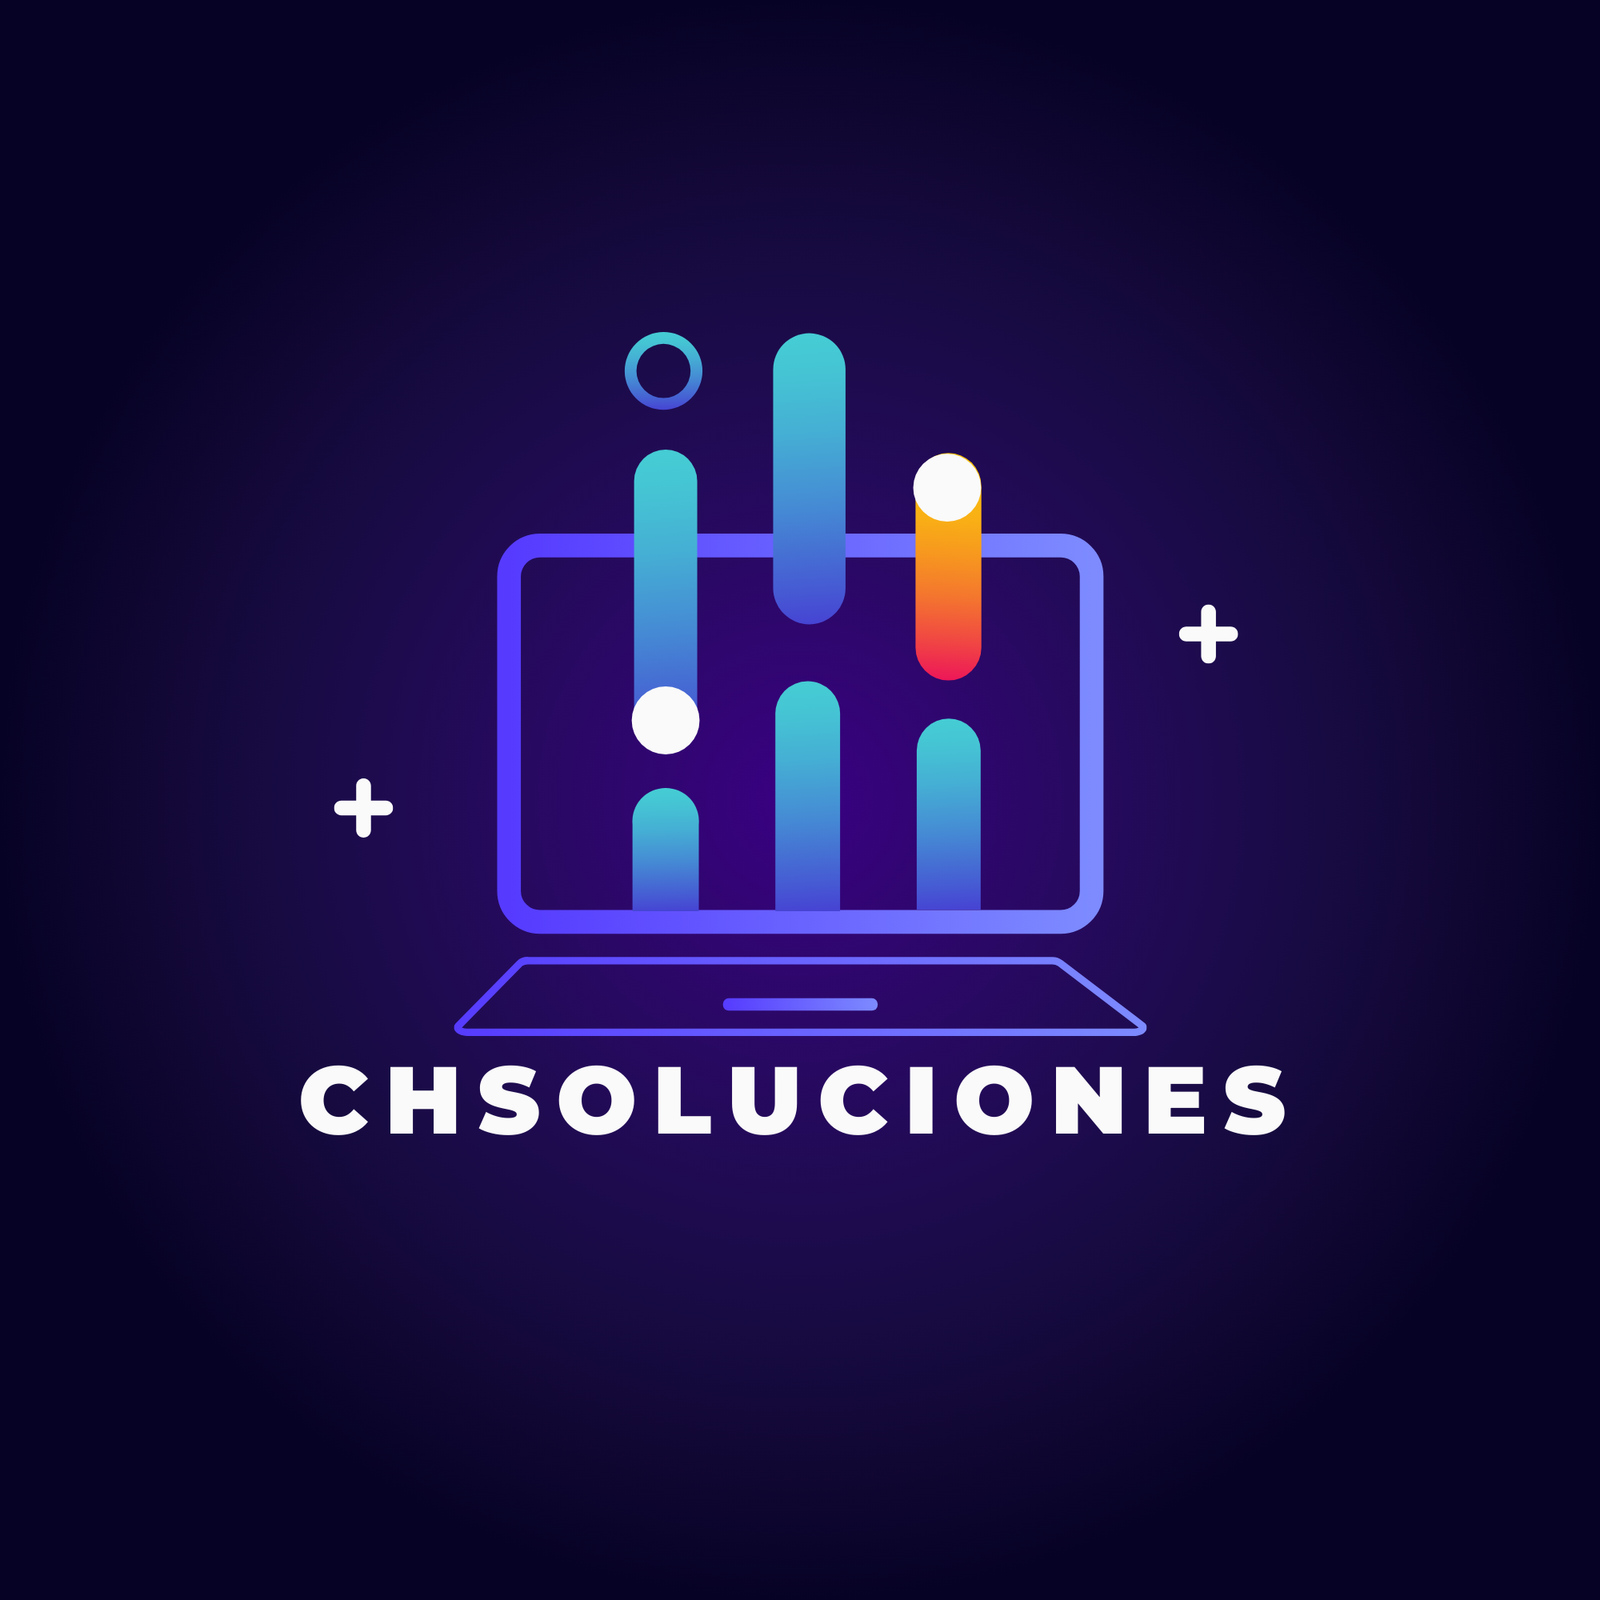 ChSoluciones